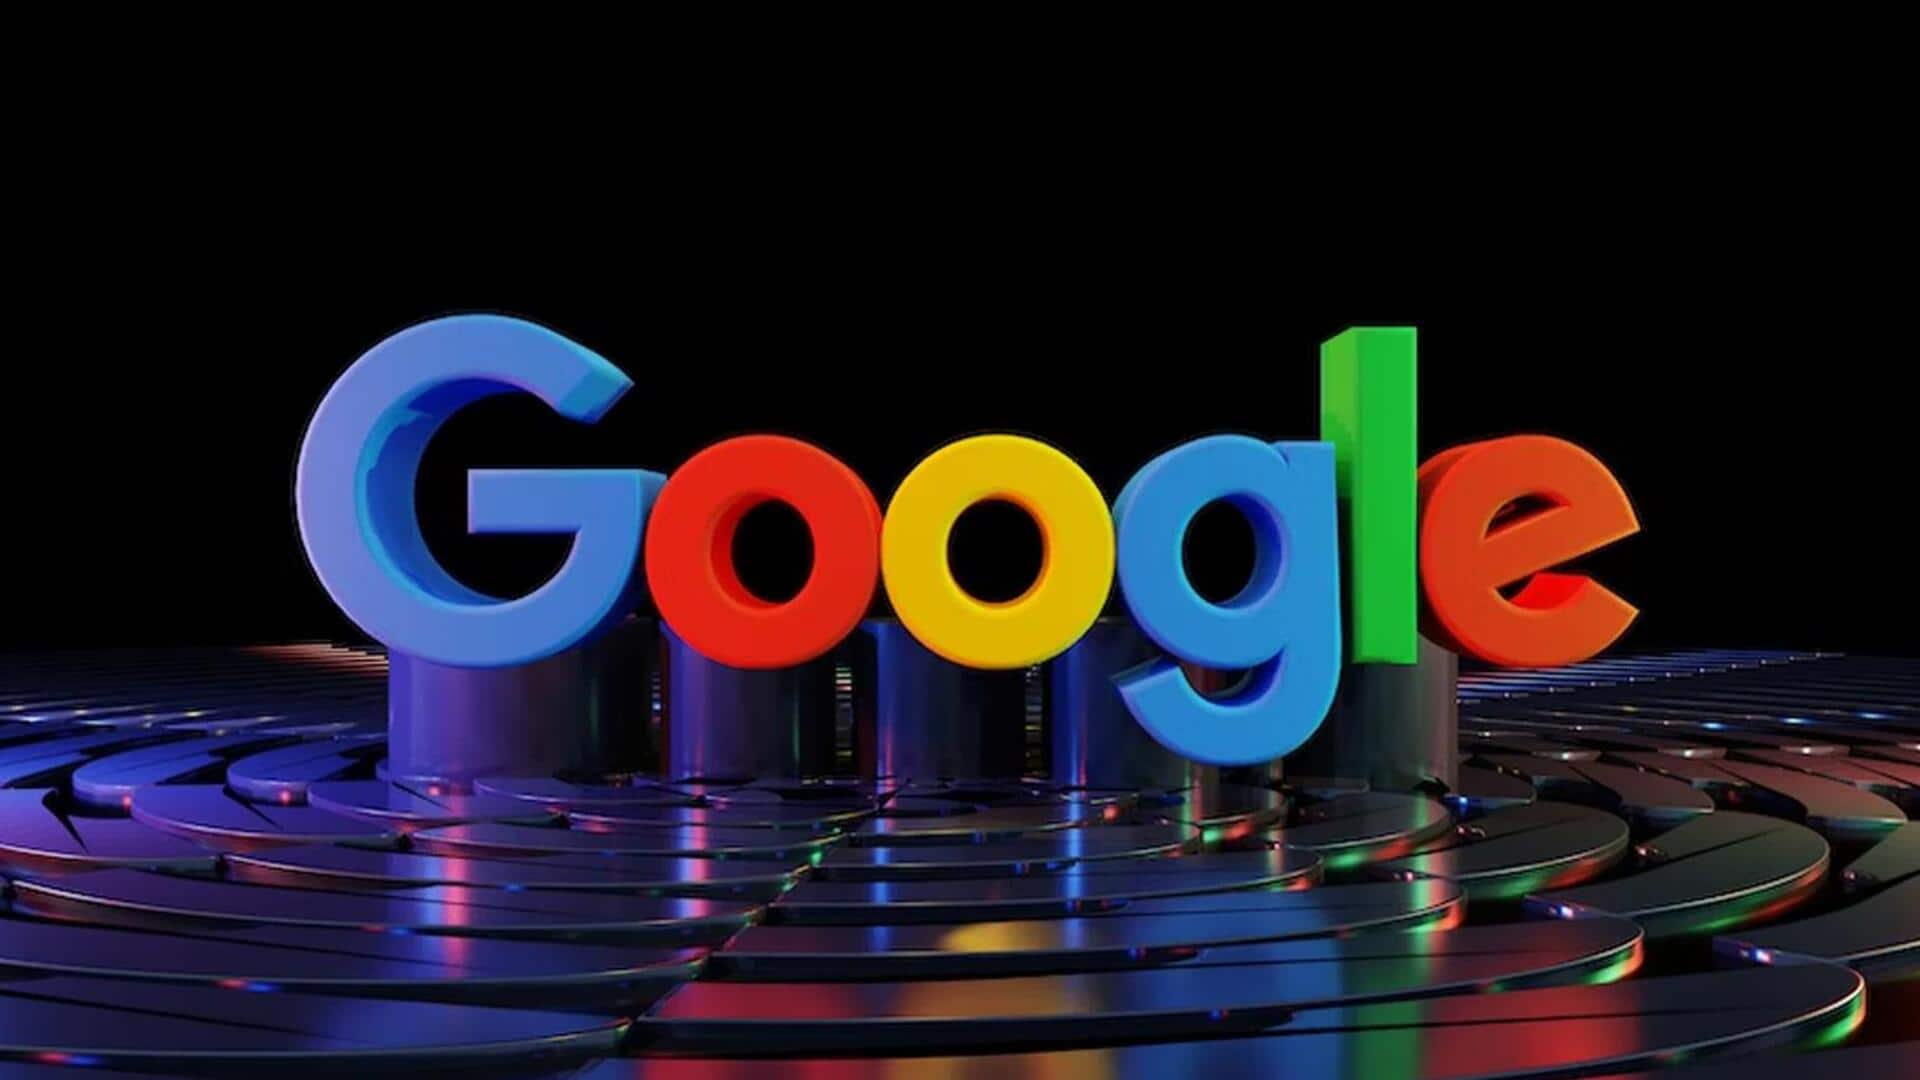 गूगल इंडिया के नए पॉलिसी हेड हो सकते हैं श्रीनिवास रेड्डी, फिलहाल माइक्रोसॉफ्ट में हैं कार्यरत